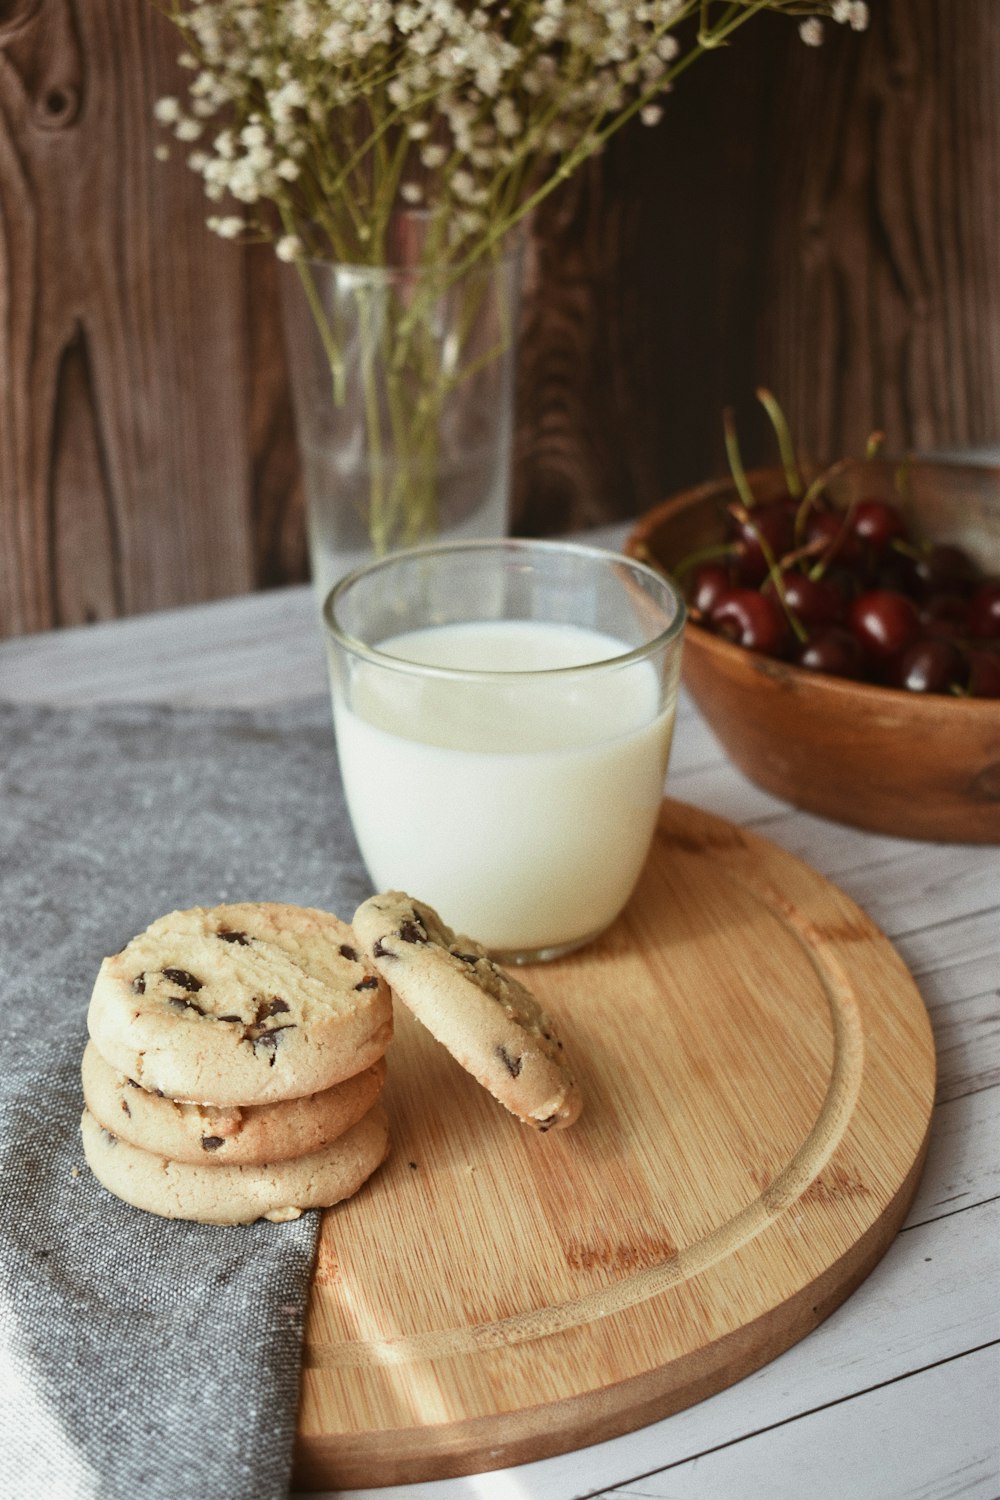 bicchiere trasparente con latte accanto ai biscotti su tagliere di legno marrone